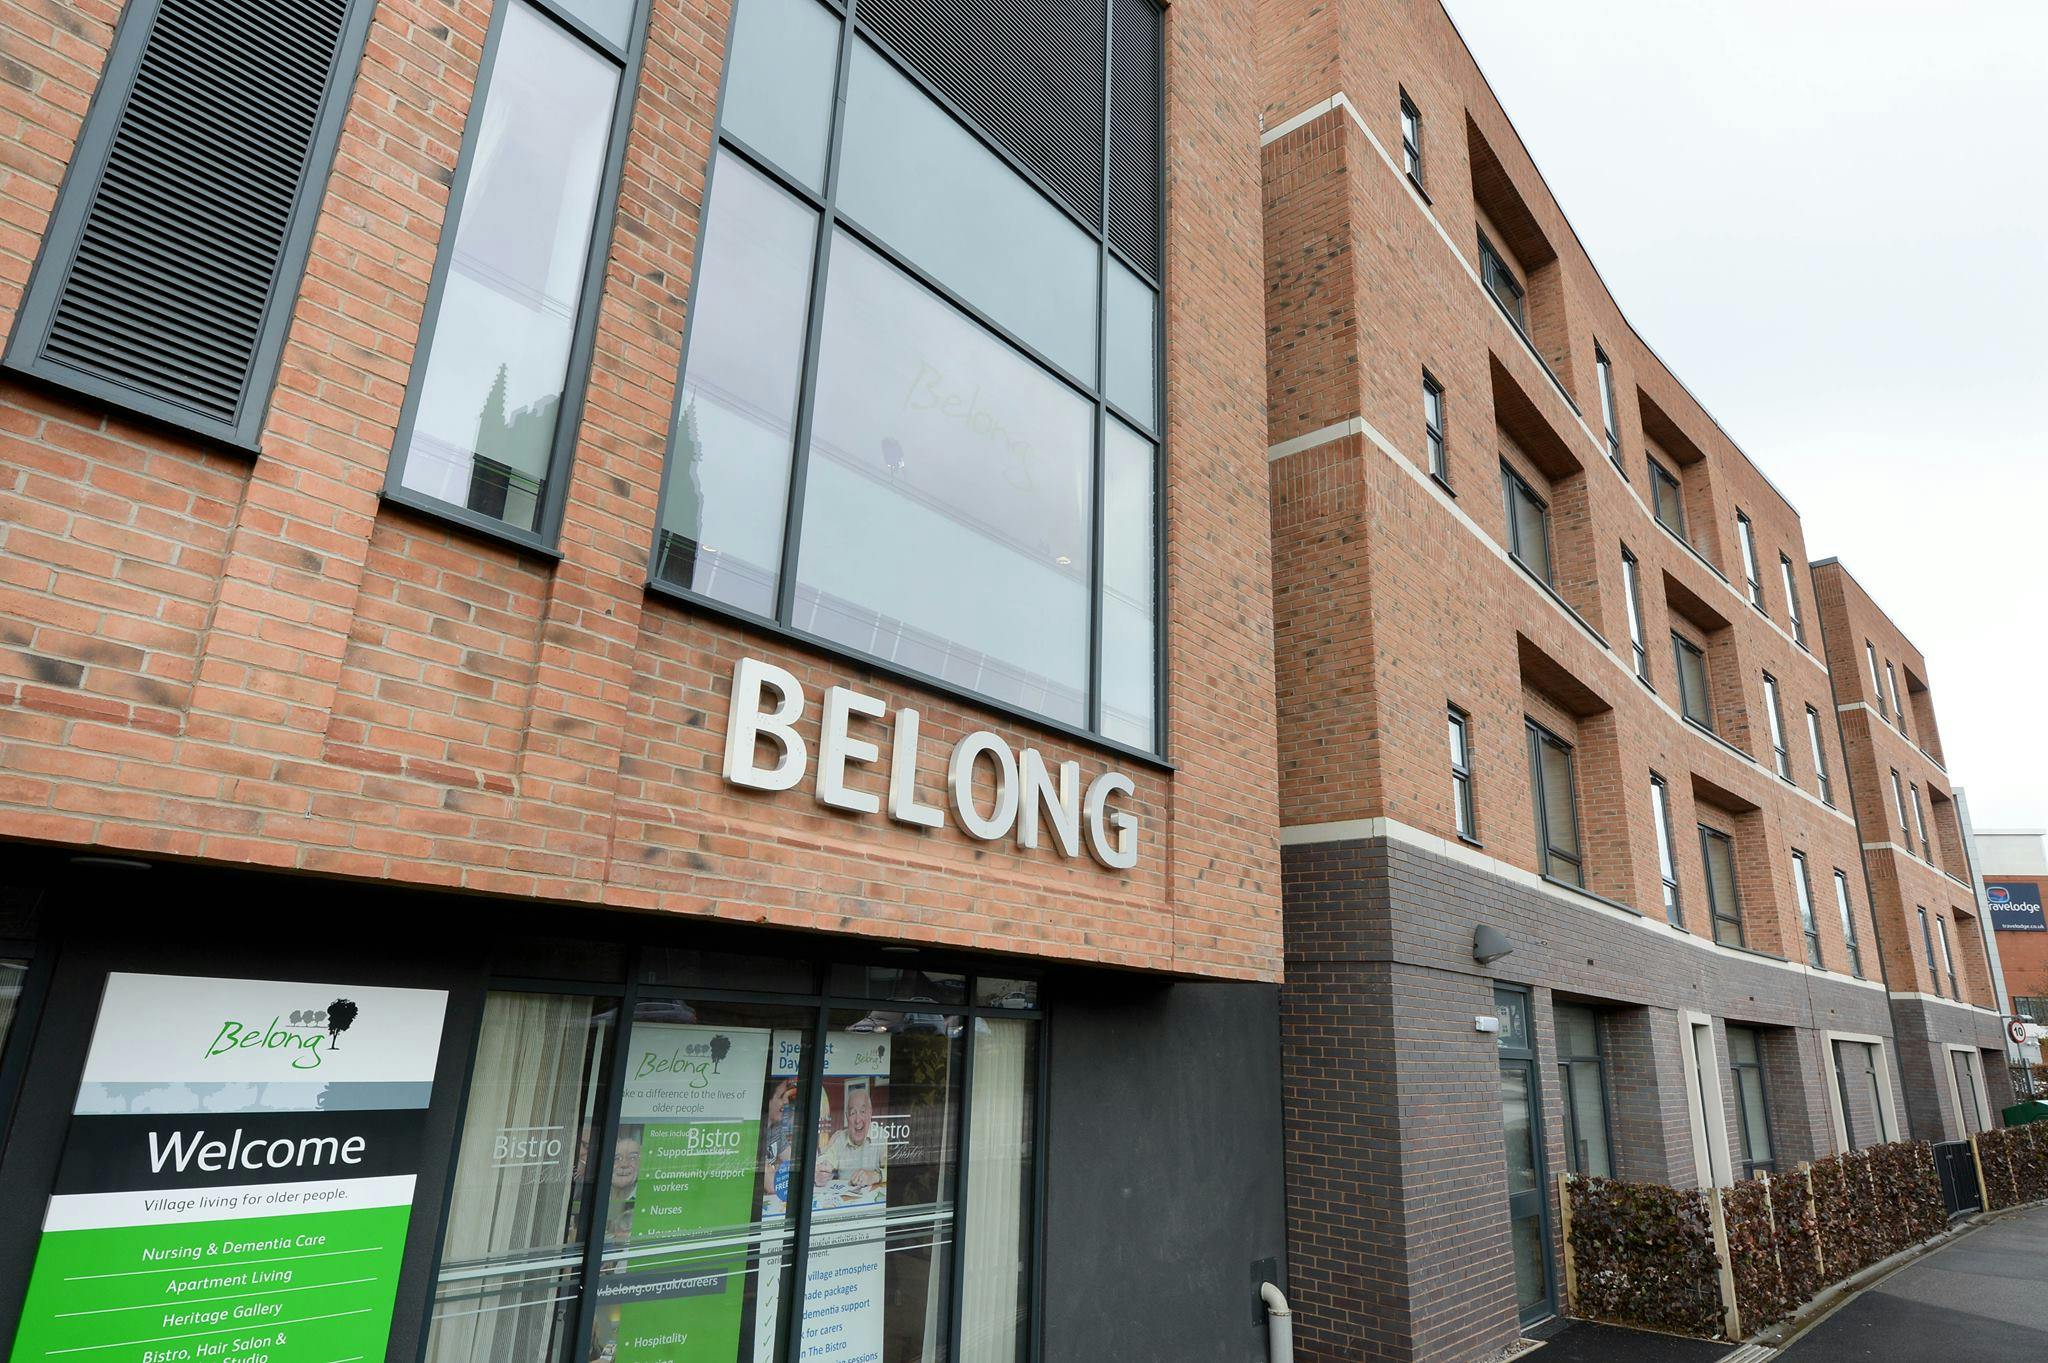 Belong Villages - Belong Newcastle-under-Lyme care home 000